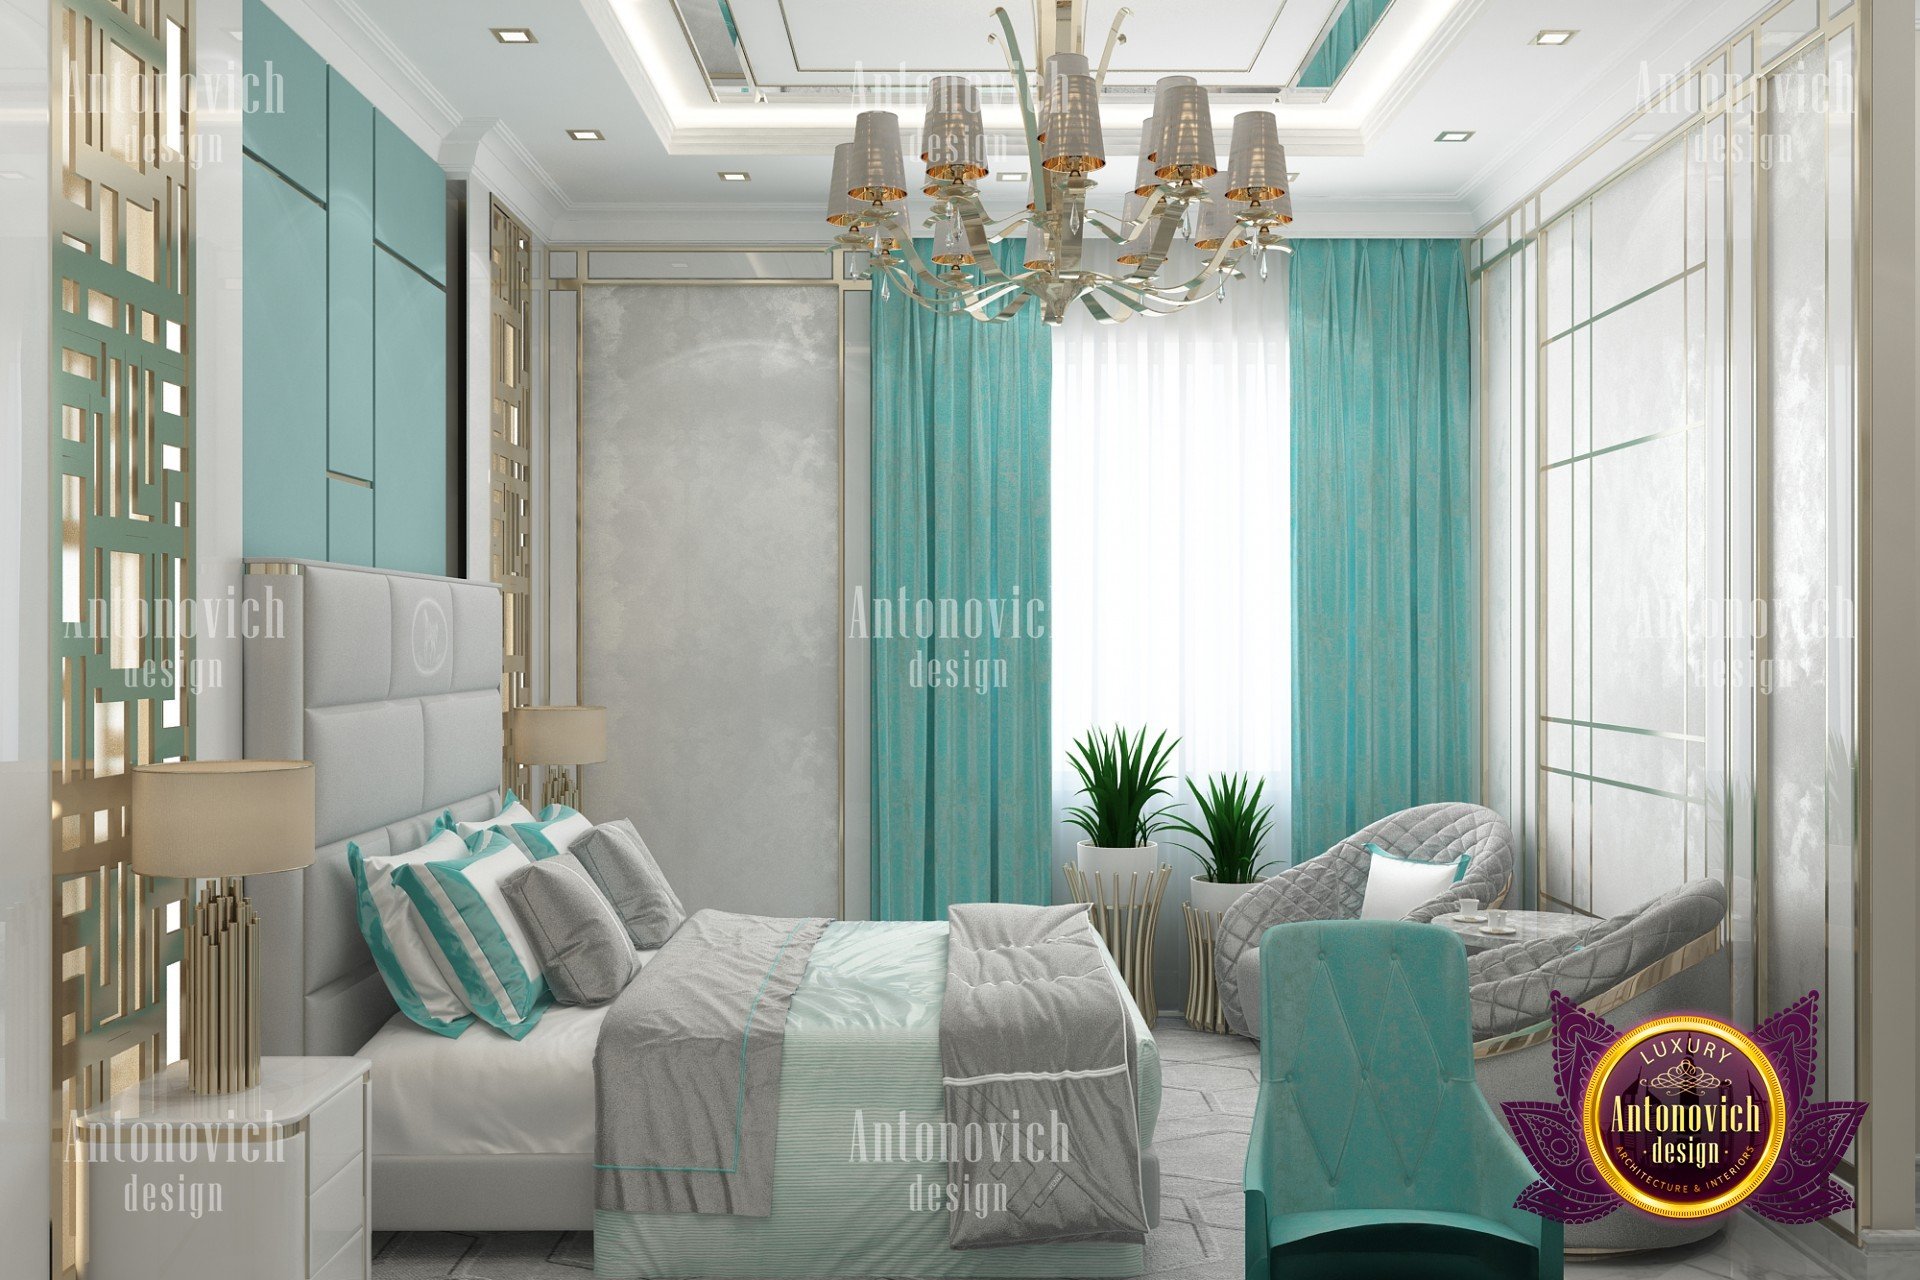 bangladeshi bedroom furniture design